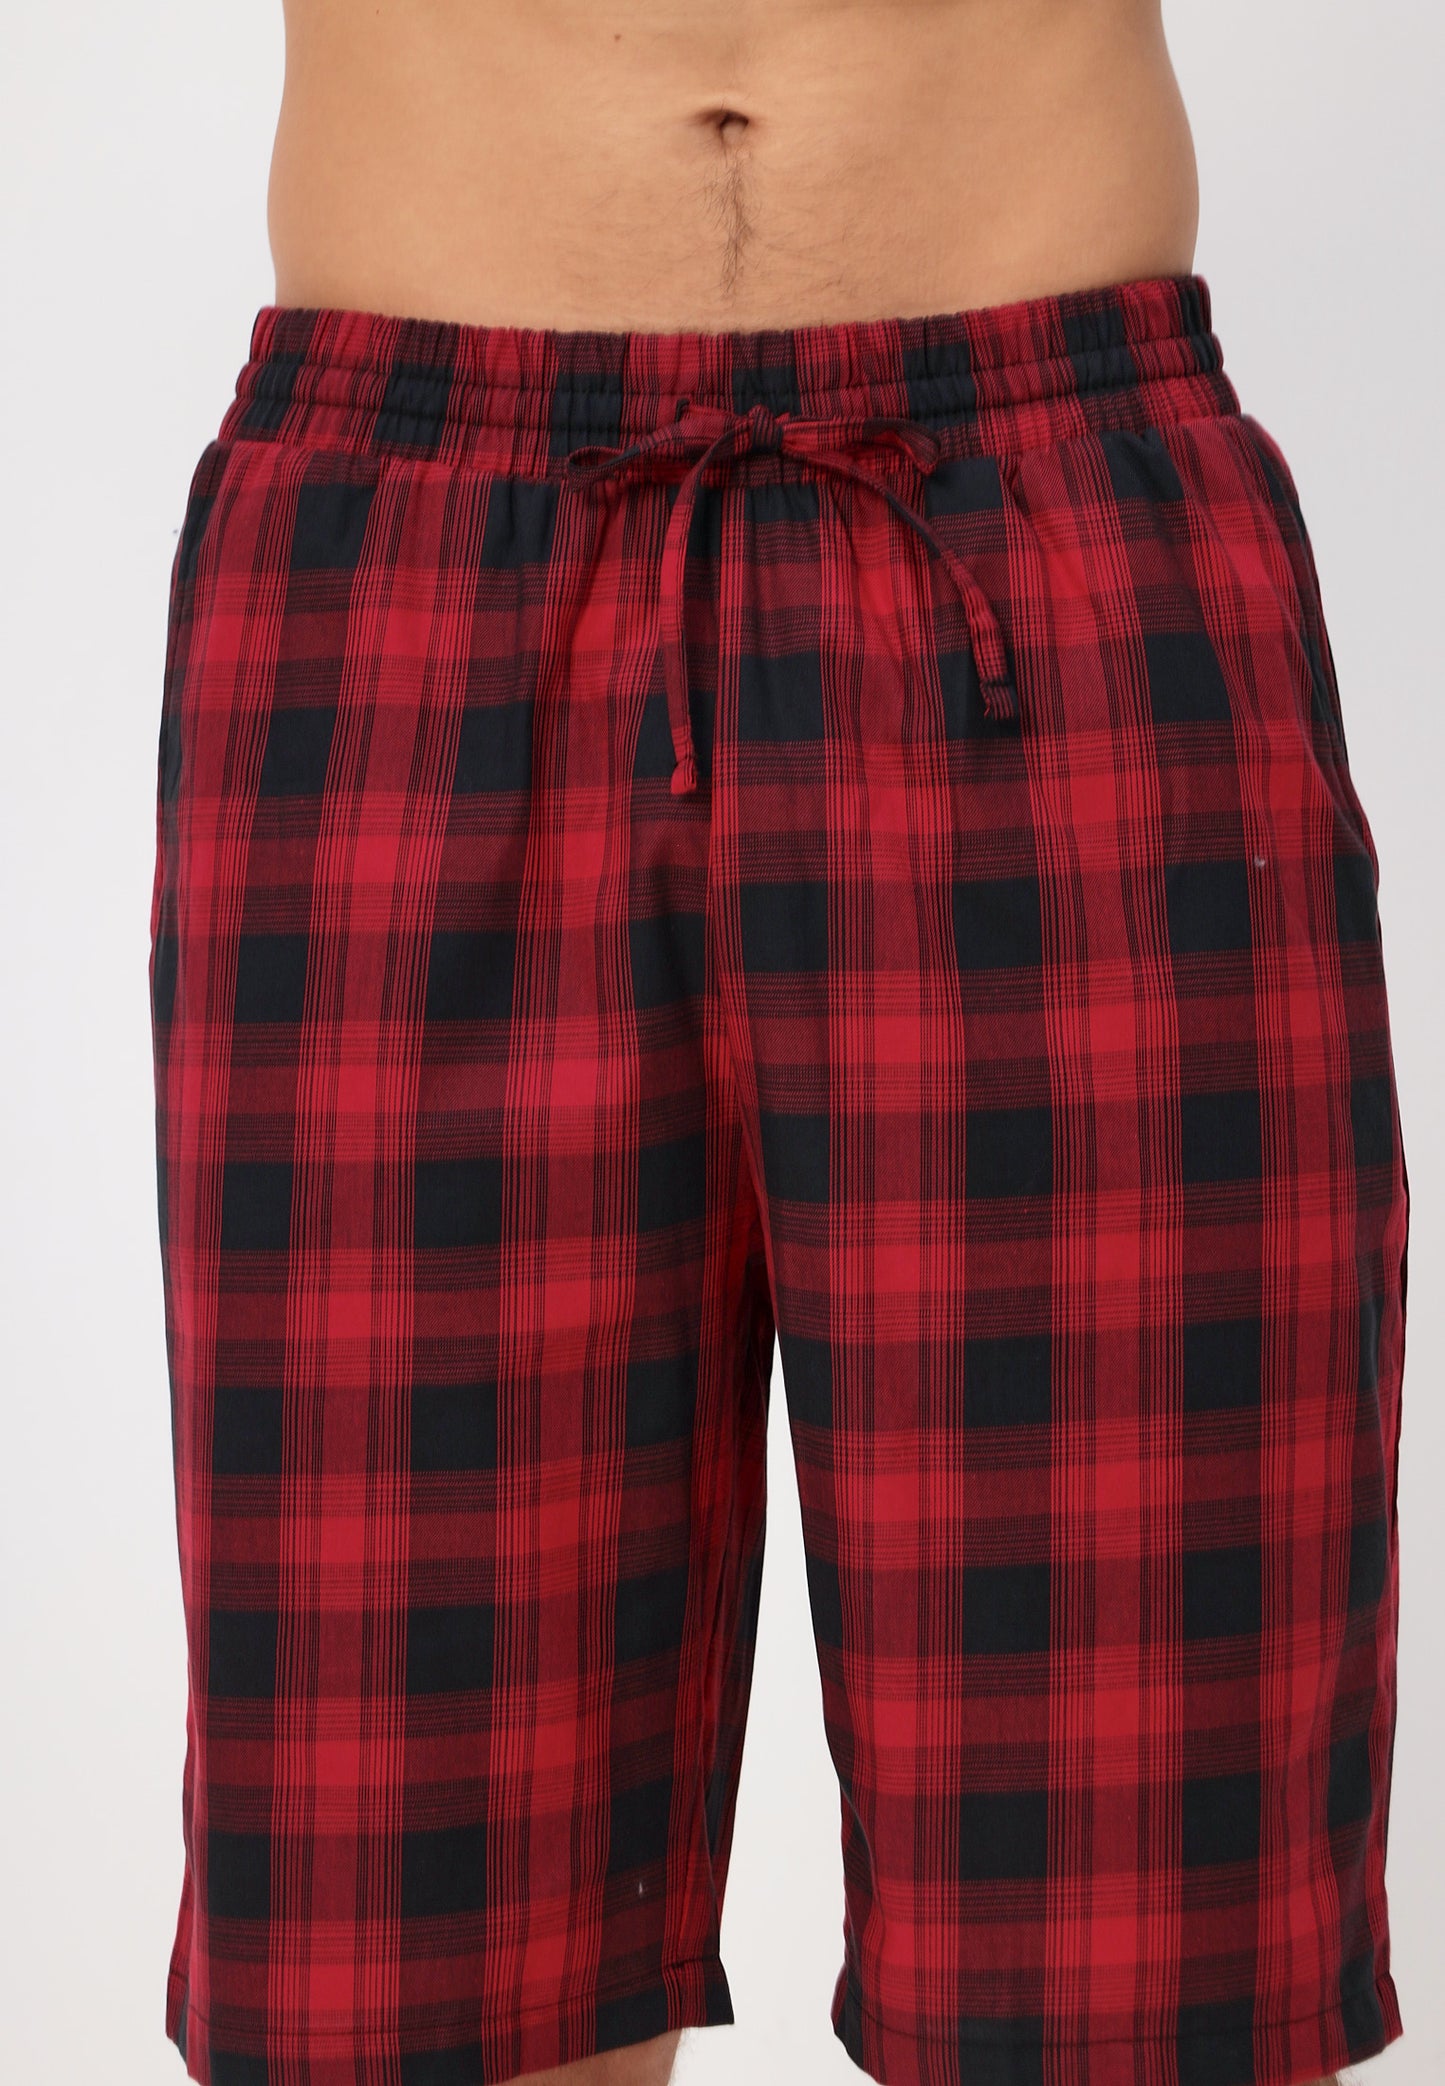 Zweiteiliges Set Herren Pyjama Set - Kurzarm Shirt und kurze Karierte Pyjamahose aus Baumwolle LMS-6438 Schwarz/Rot